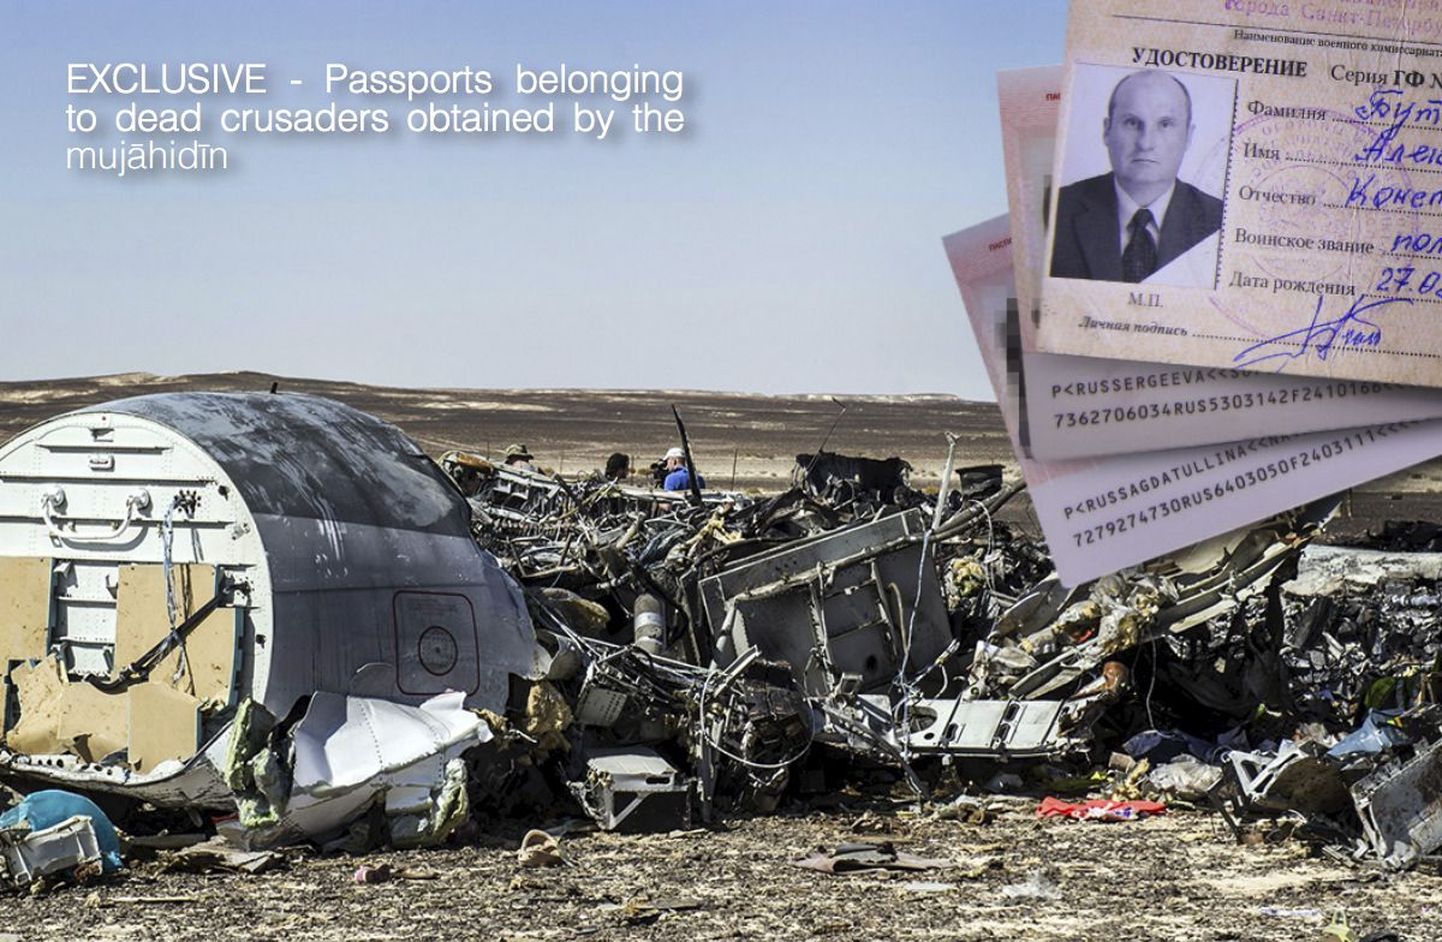 ISi ametlikus võrguväljaandes Dabiq avaldatud foto surma saanud reisijate passidest, mis leiti õnnetuspaigalt Siinai poolsaarel.